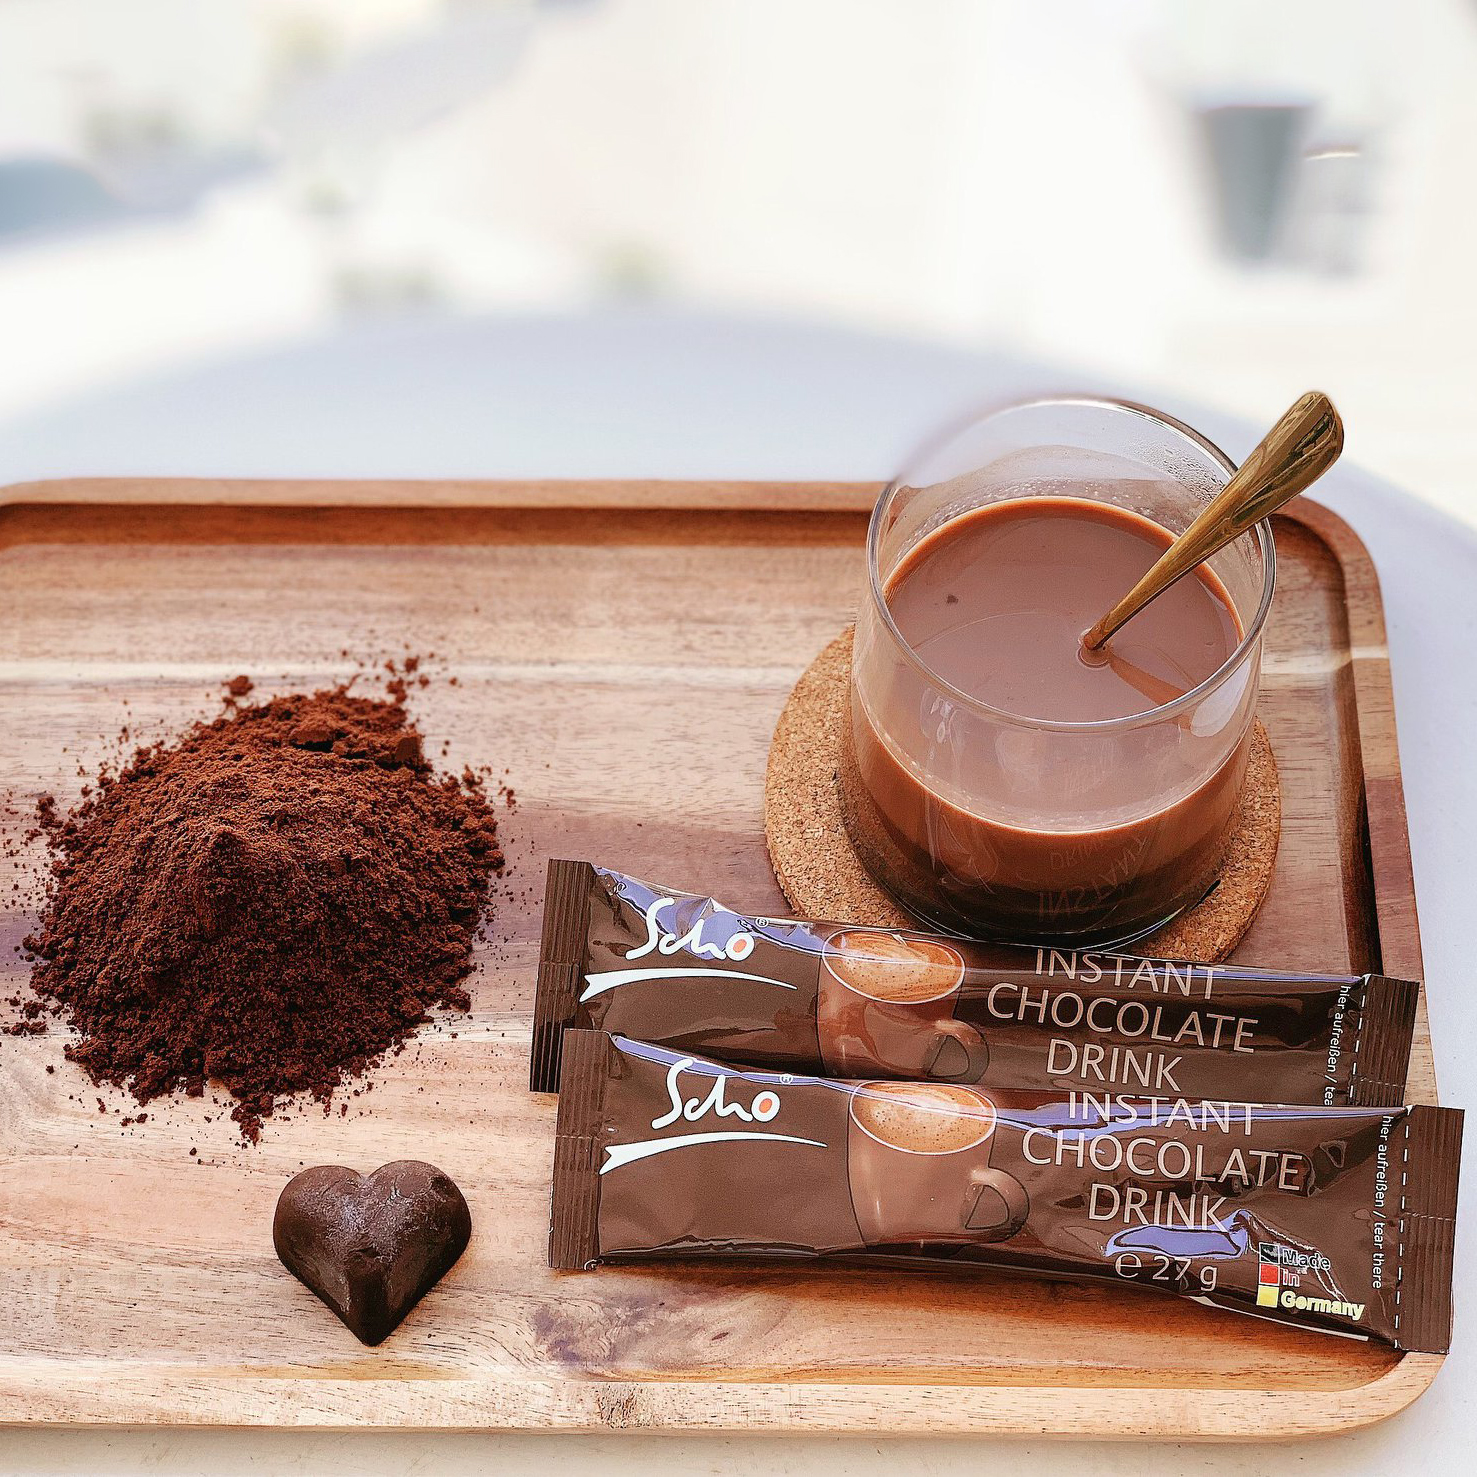 Bột Cacao hoà tan Scho của Đức - Hộp 10 bịch 27gr - Hàng nhập khẩu